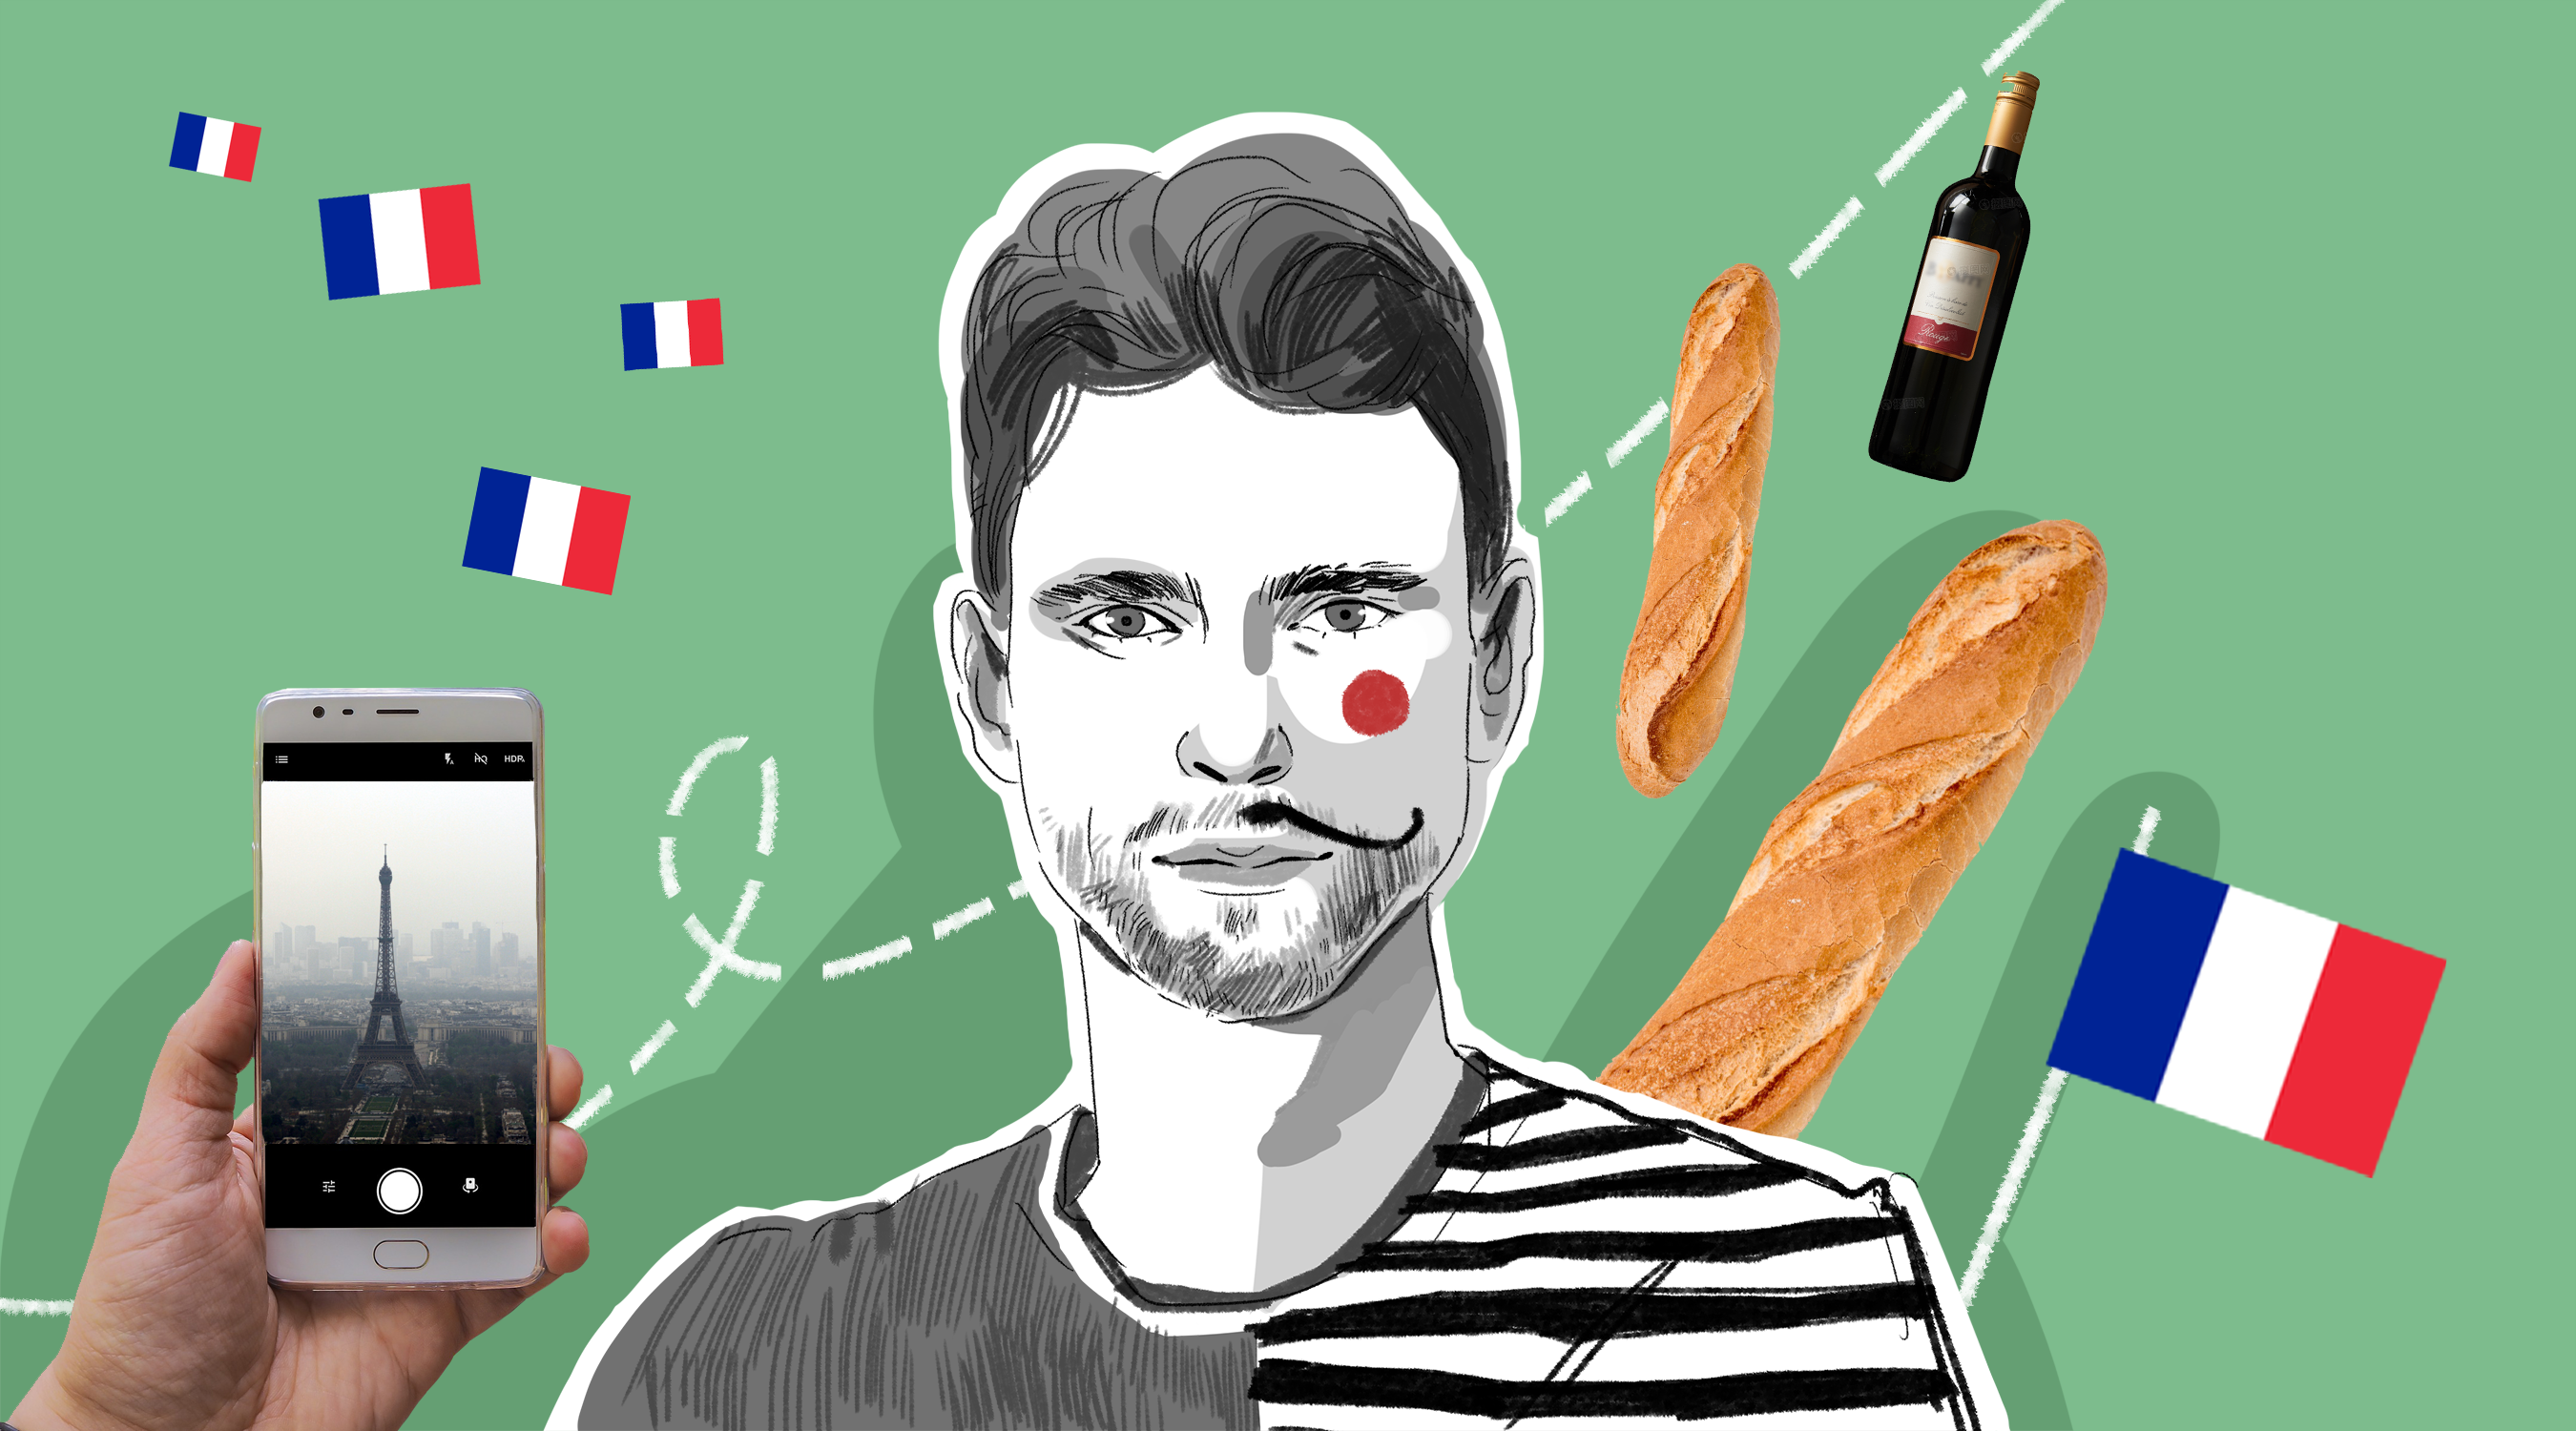 Хлеб, пакеты и шапочки для плавания: 5 неожиданных сходств между французами и русскими